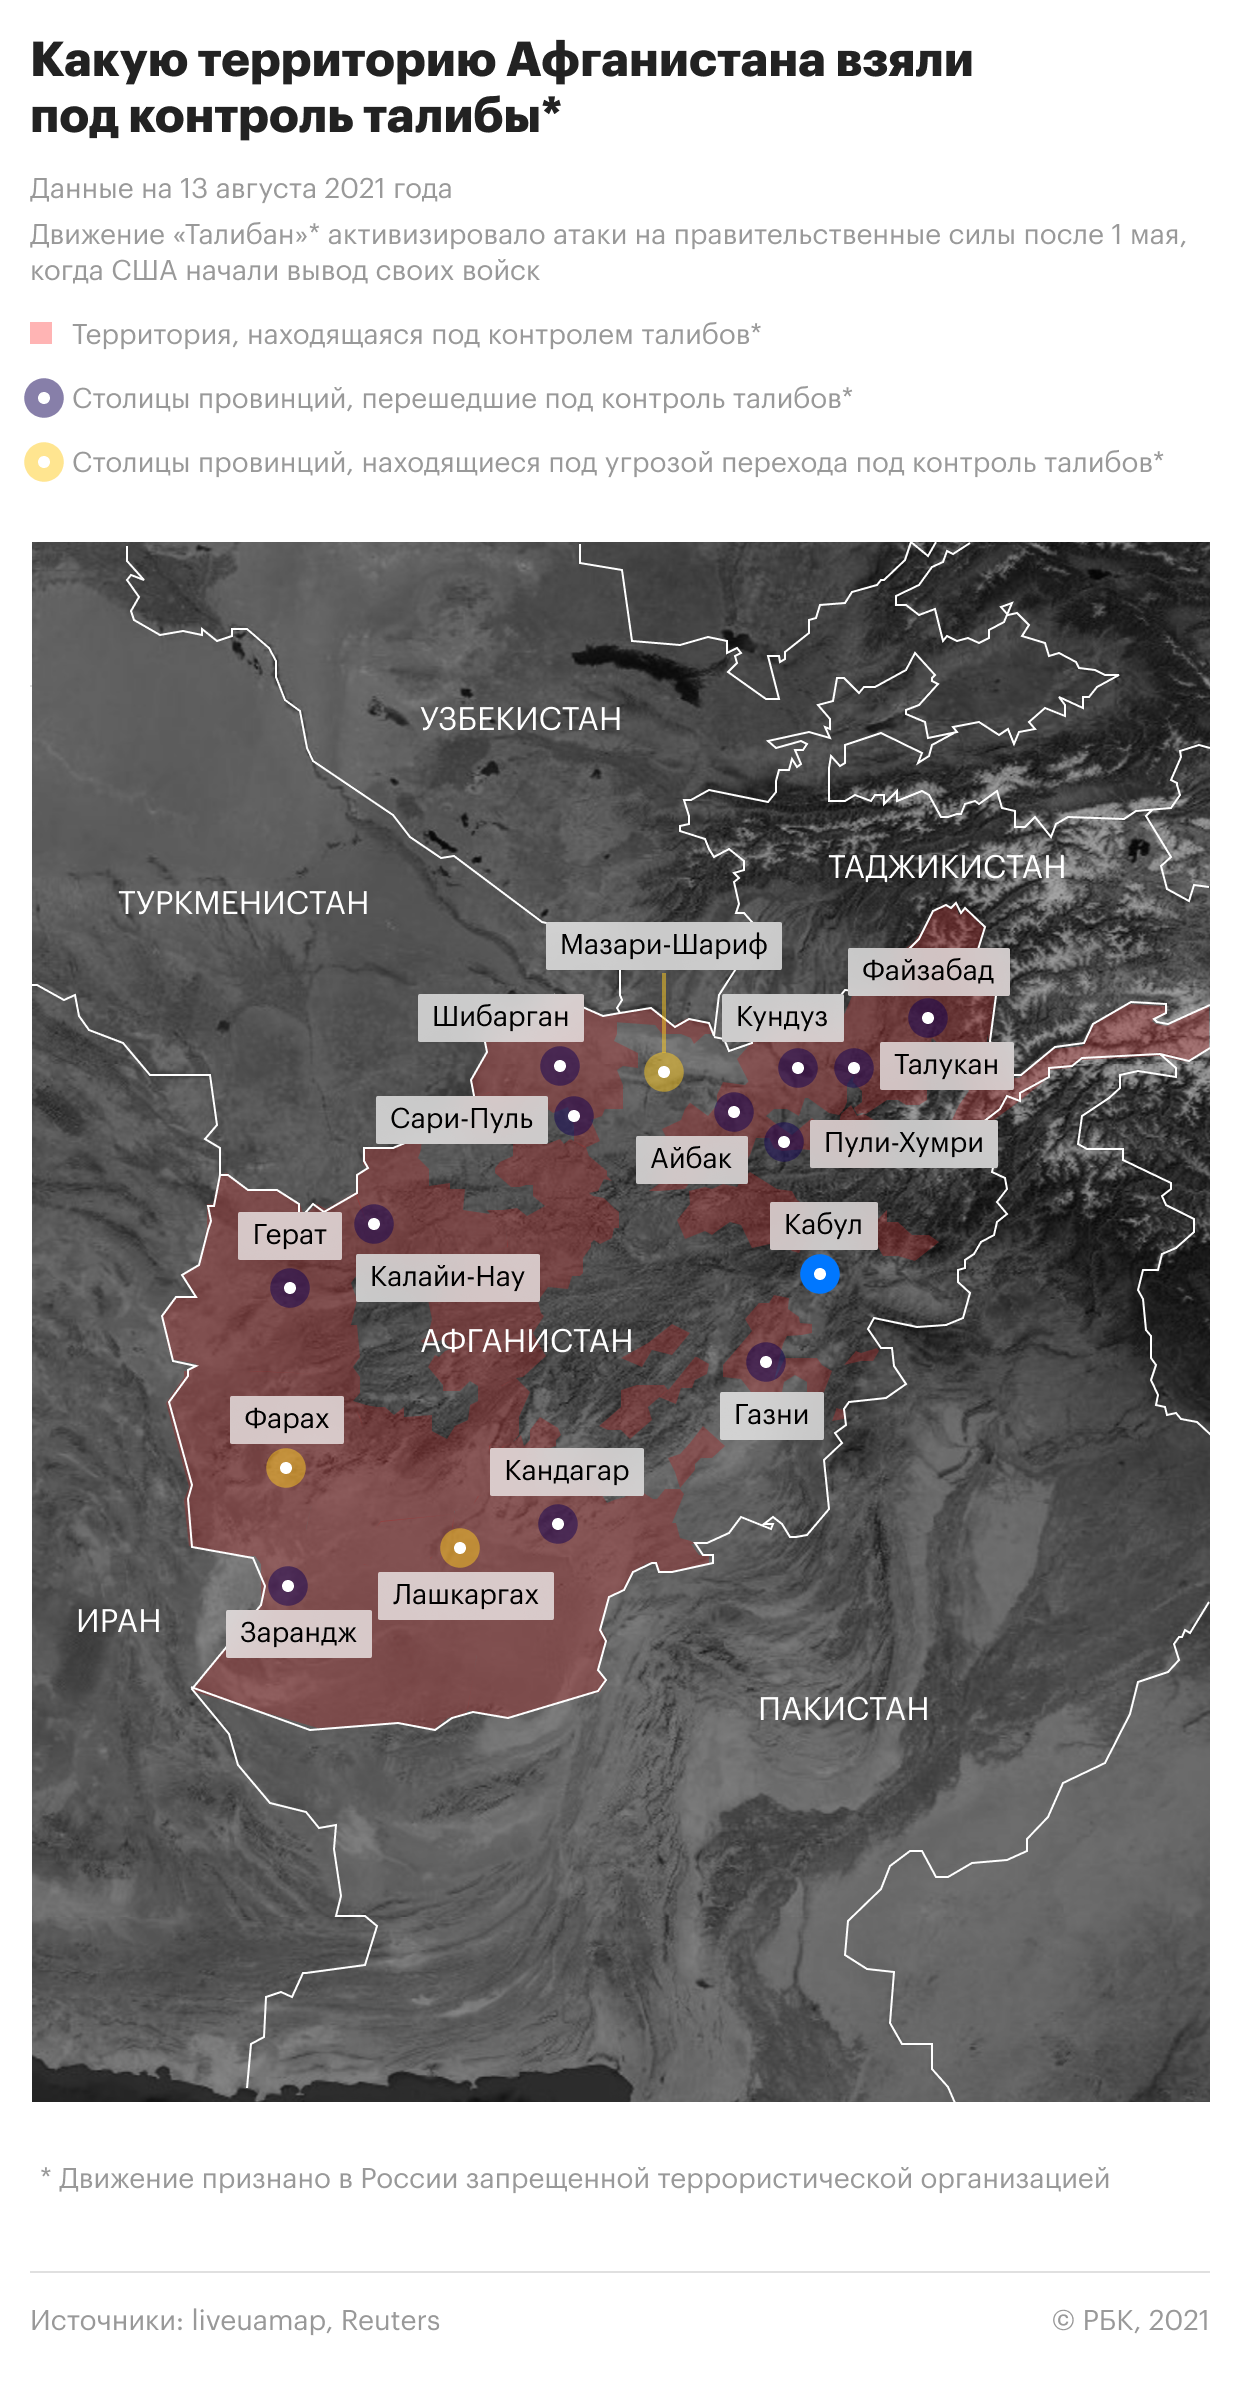 Талибы захватили столицу провинции в 50 км от Кабула"/>













